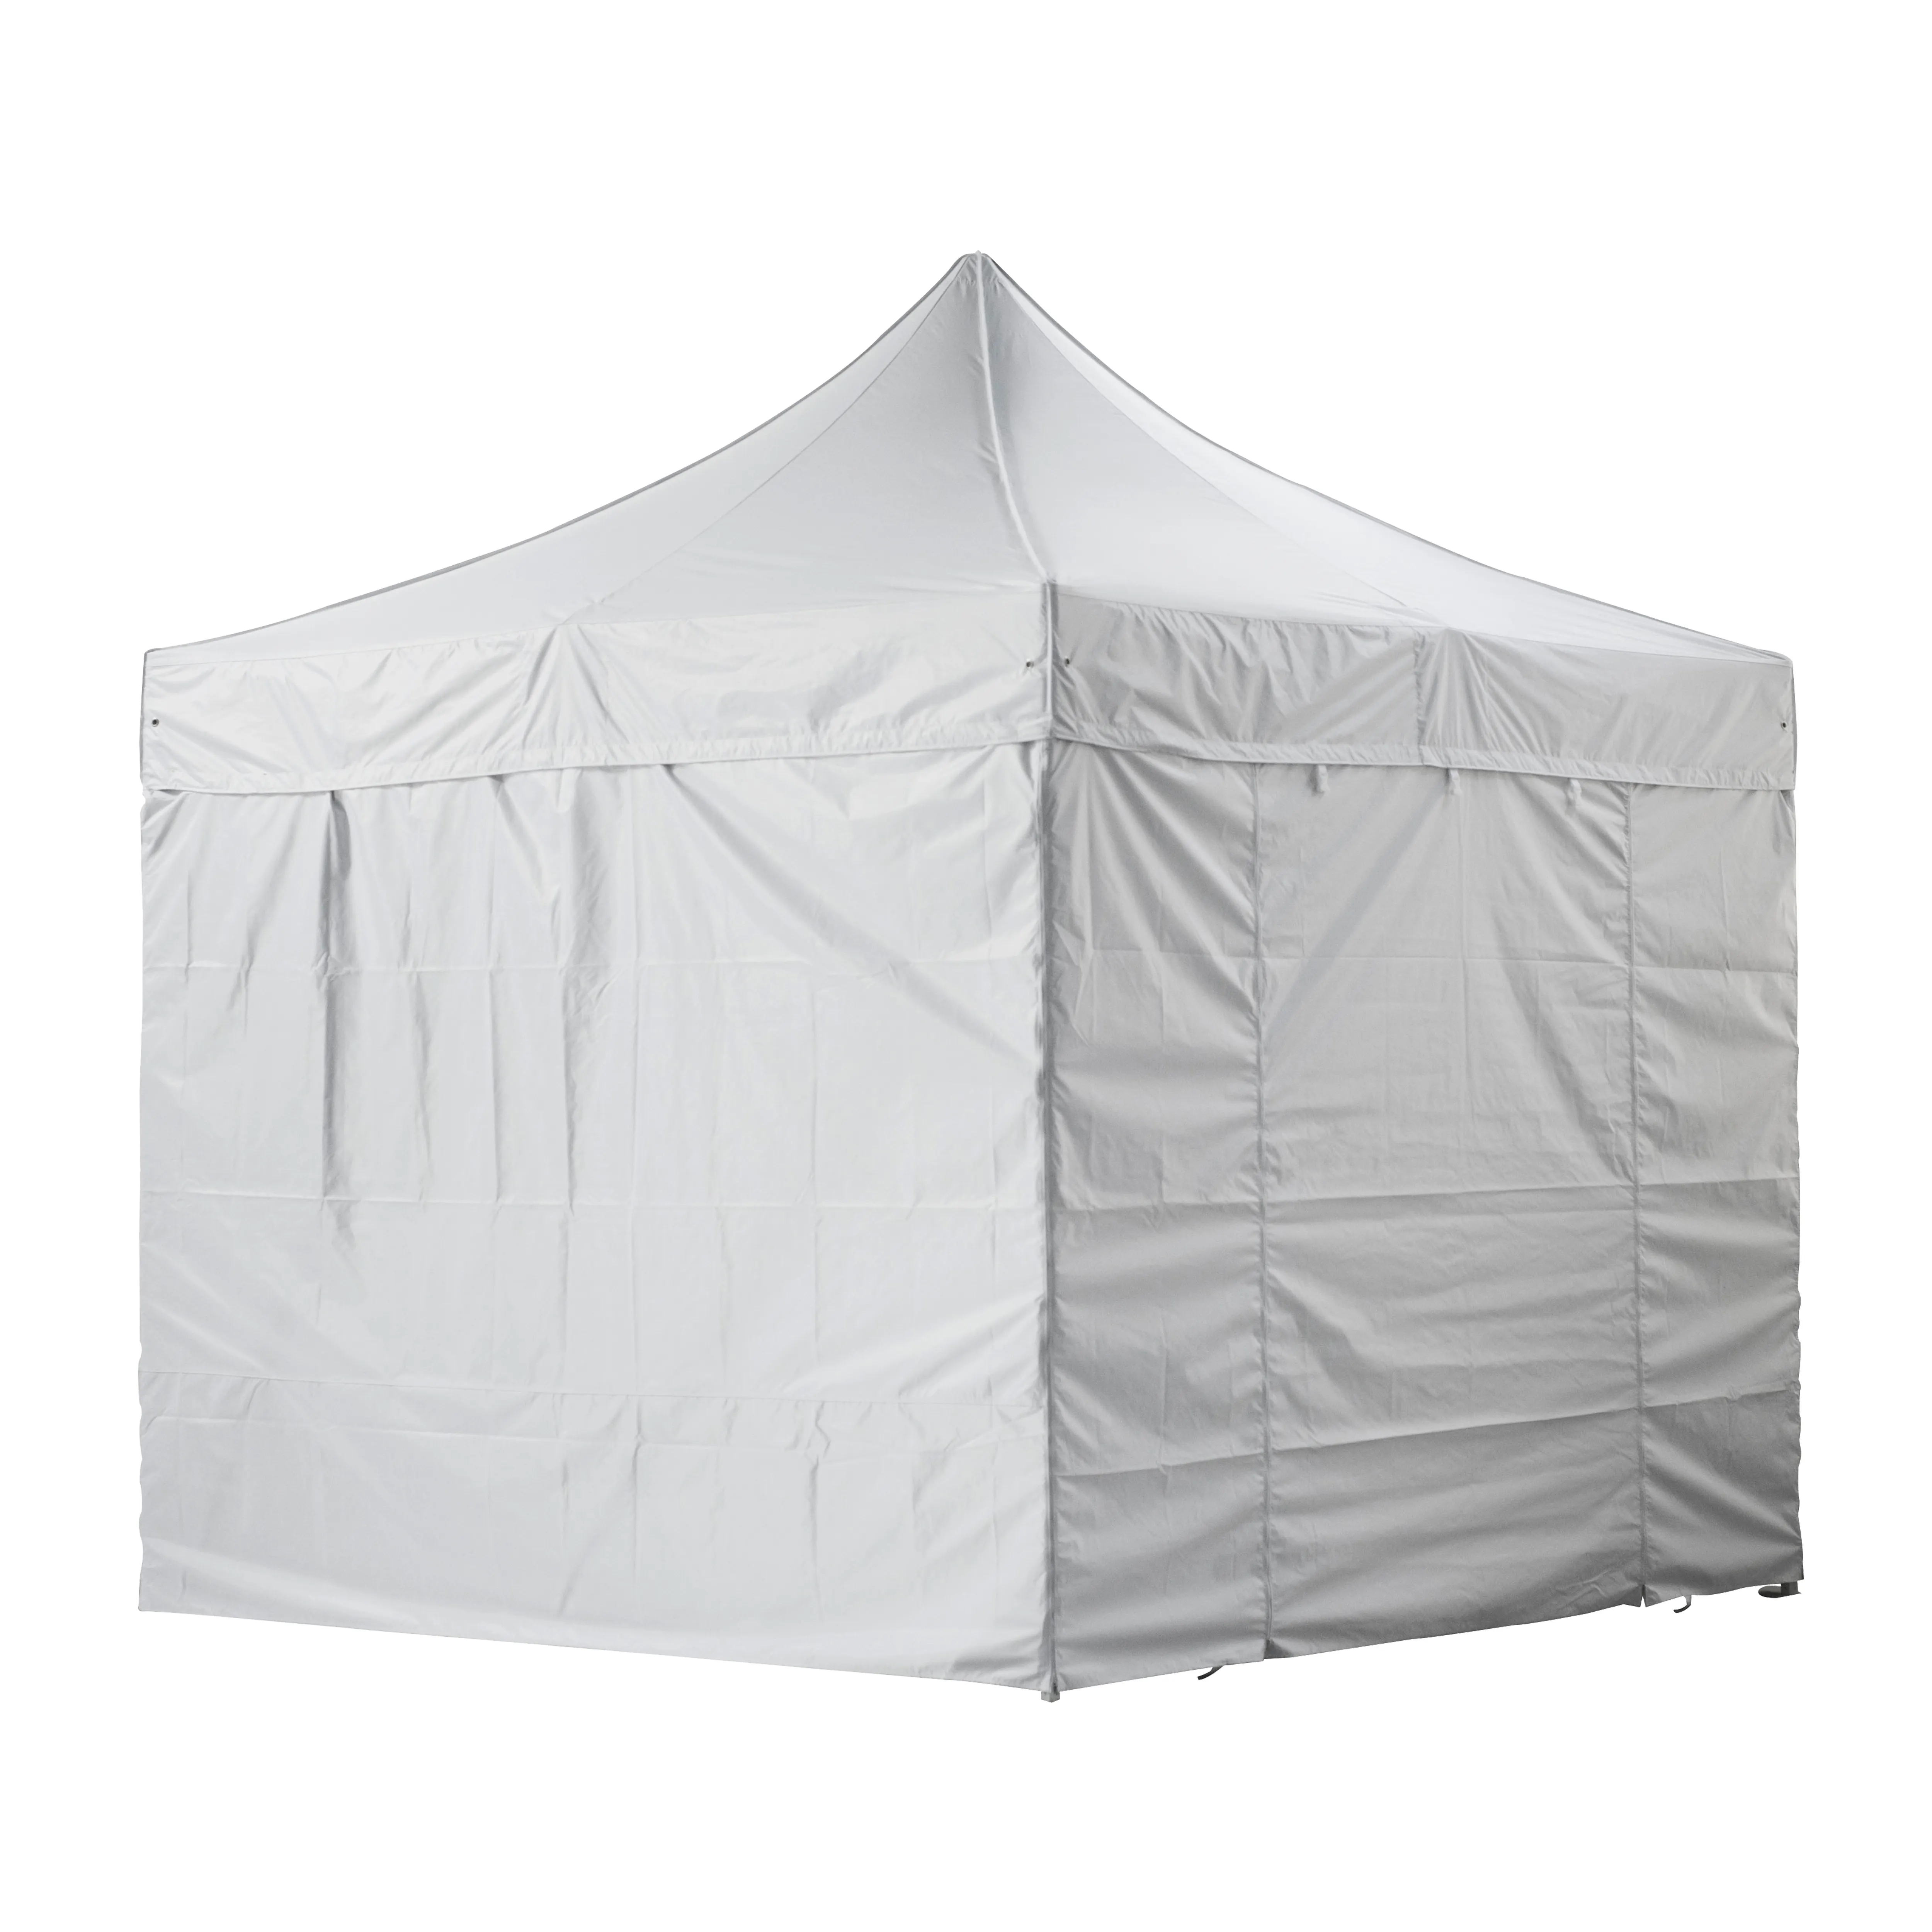 مظلة للحديقة مقاومة للمطر 3x3 م ، مأوى ظل للحديقة ، خيمة منبثقة للخدمة الشاقة